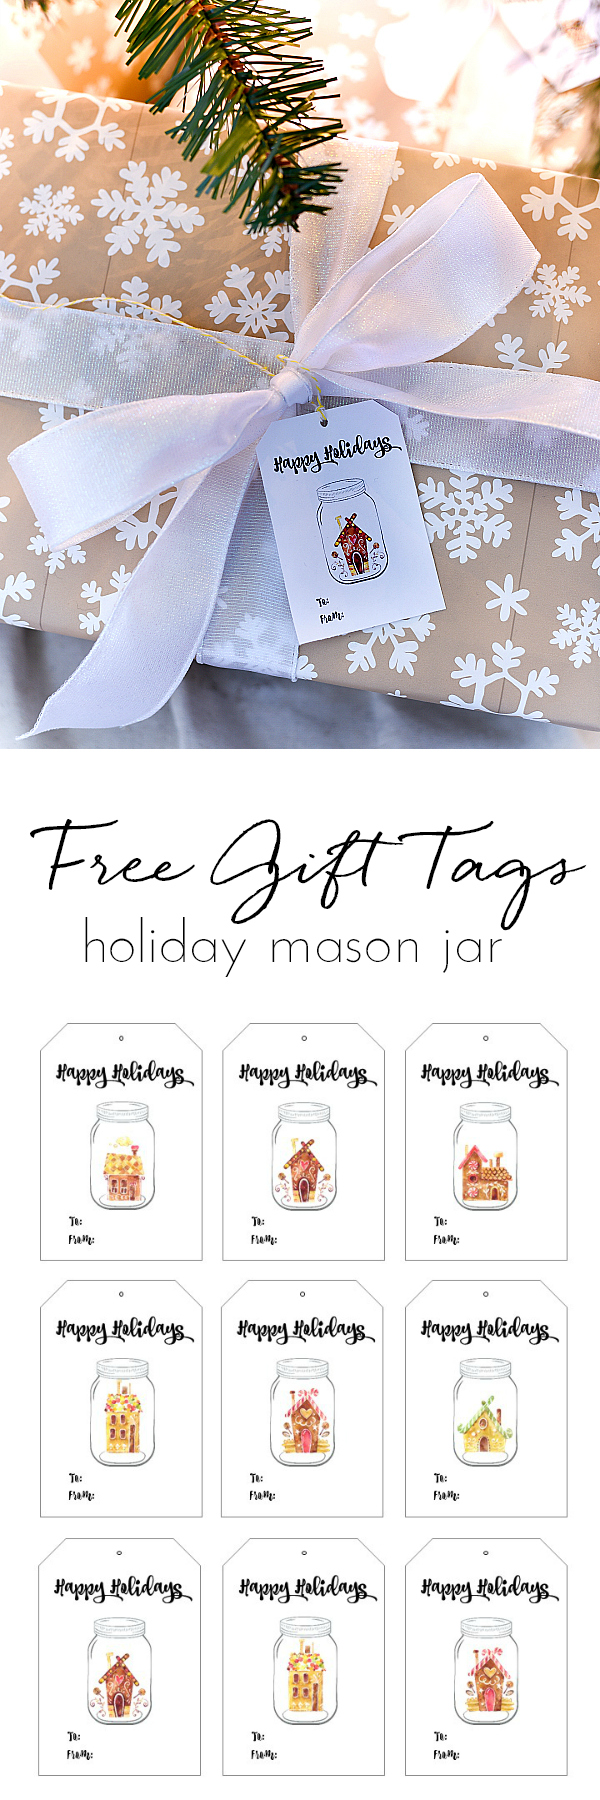 Free Printable Holiday Gift Tags - Mason Jar Holiday Gift Tags